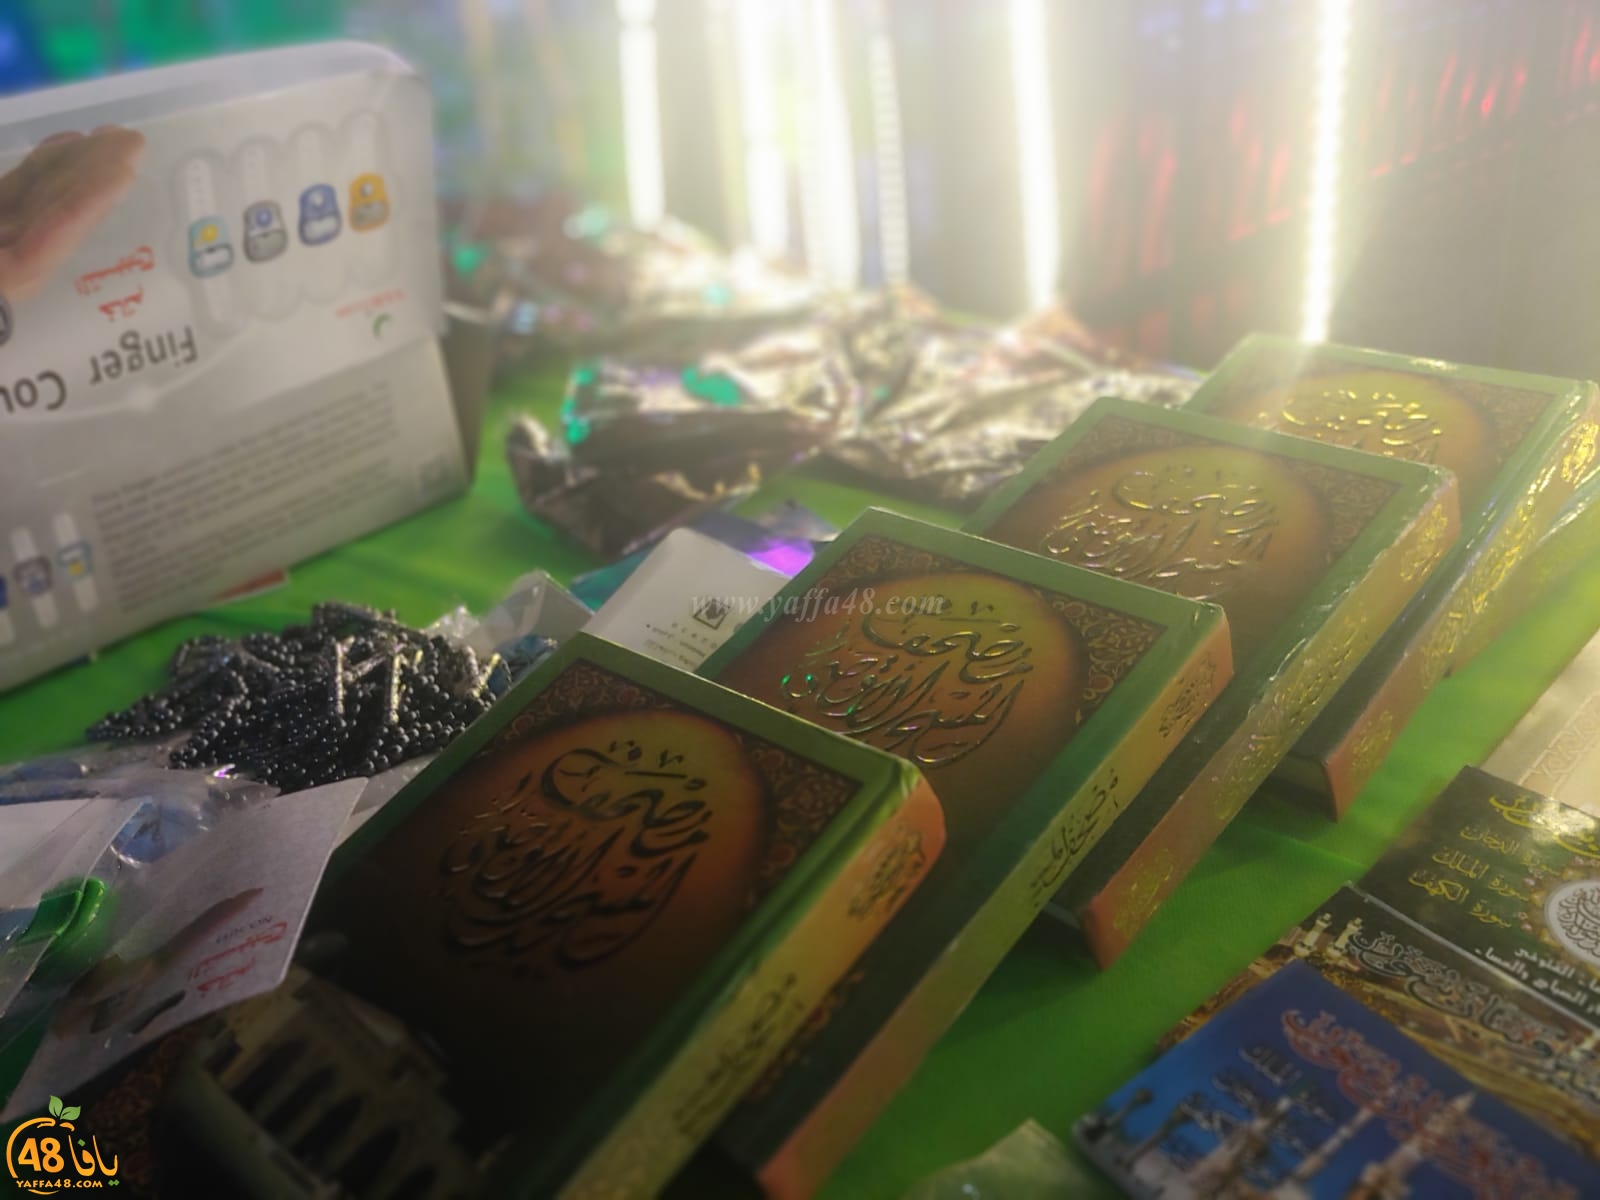  بالصور: تقديم الطعام والهدايا للمارة في شارع ييفت عن روح الشاب محمود مسلم